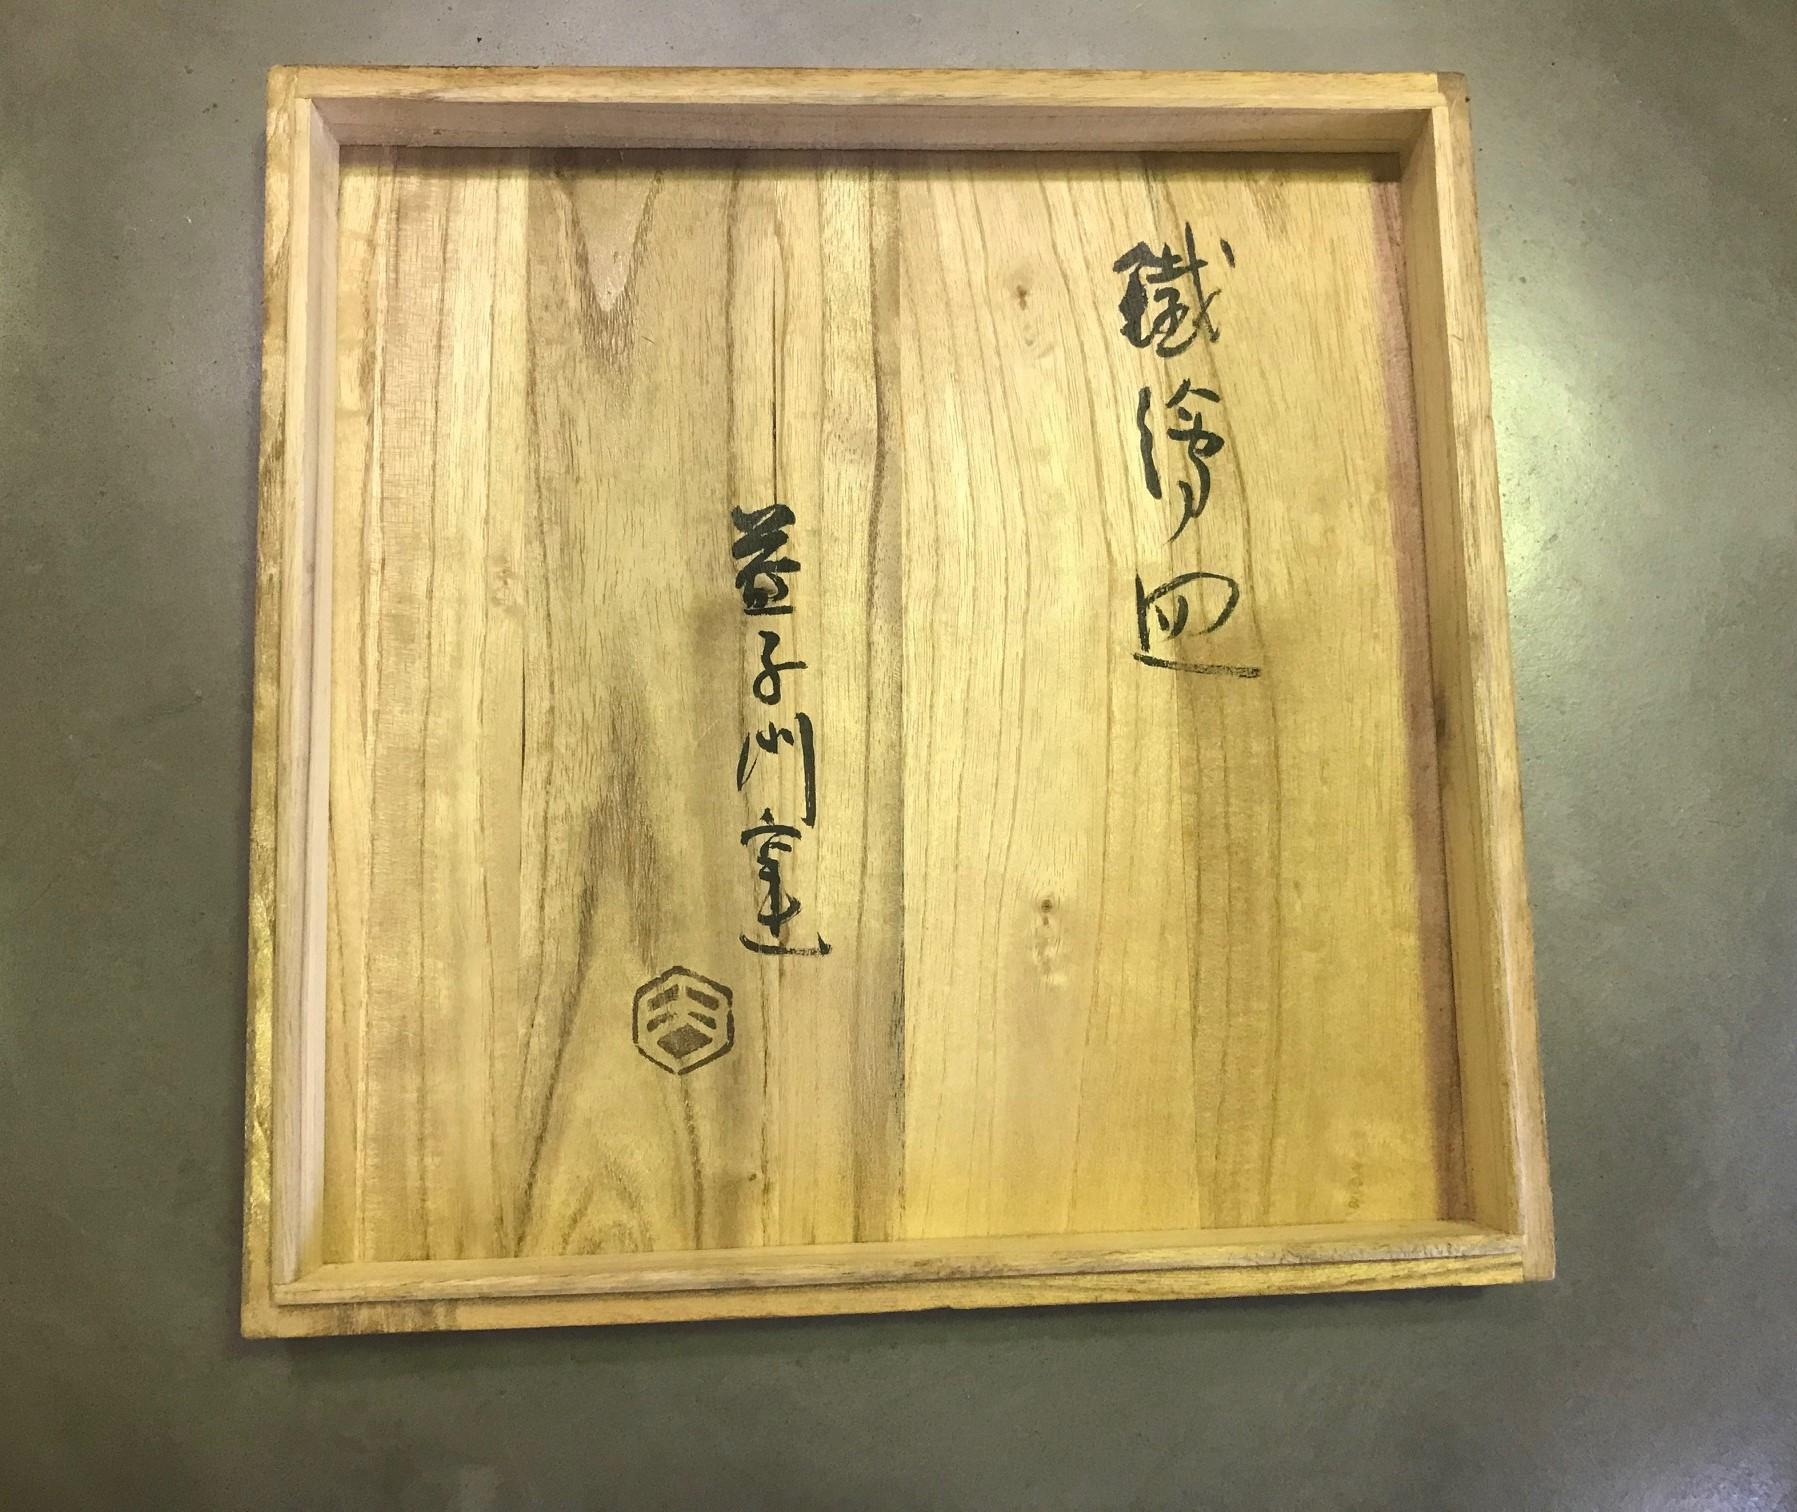 Stoneware Shoji Hamada Japanese Mingei Pottery Plate with Original Signed Sealed Box For Sale